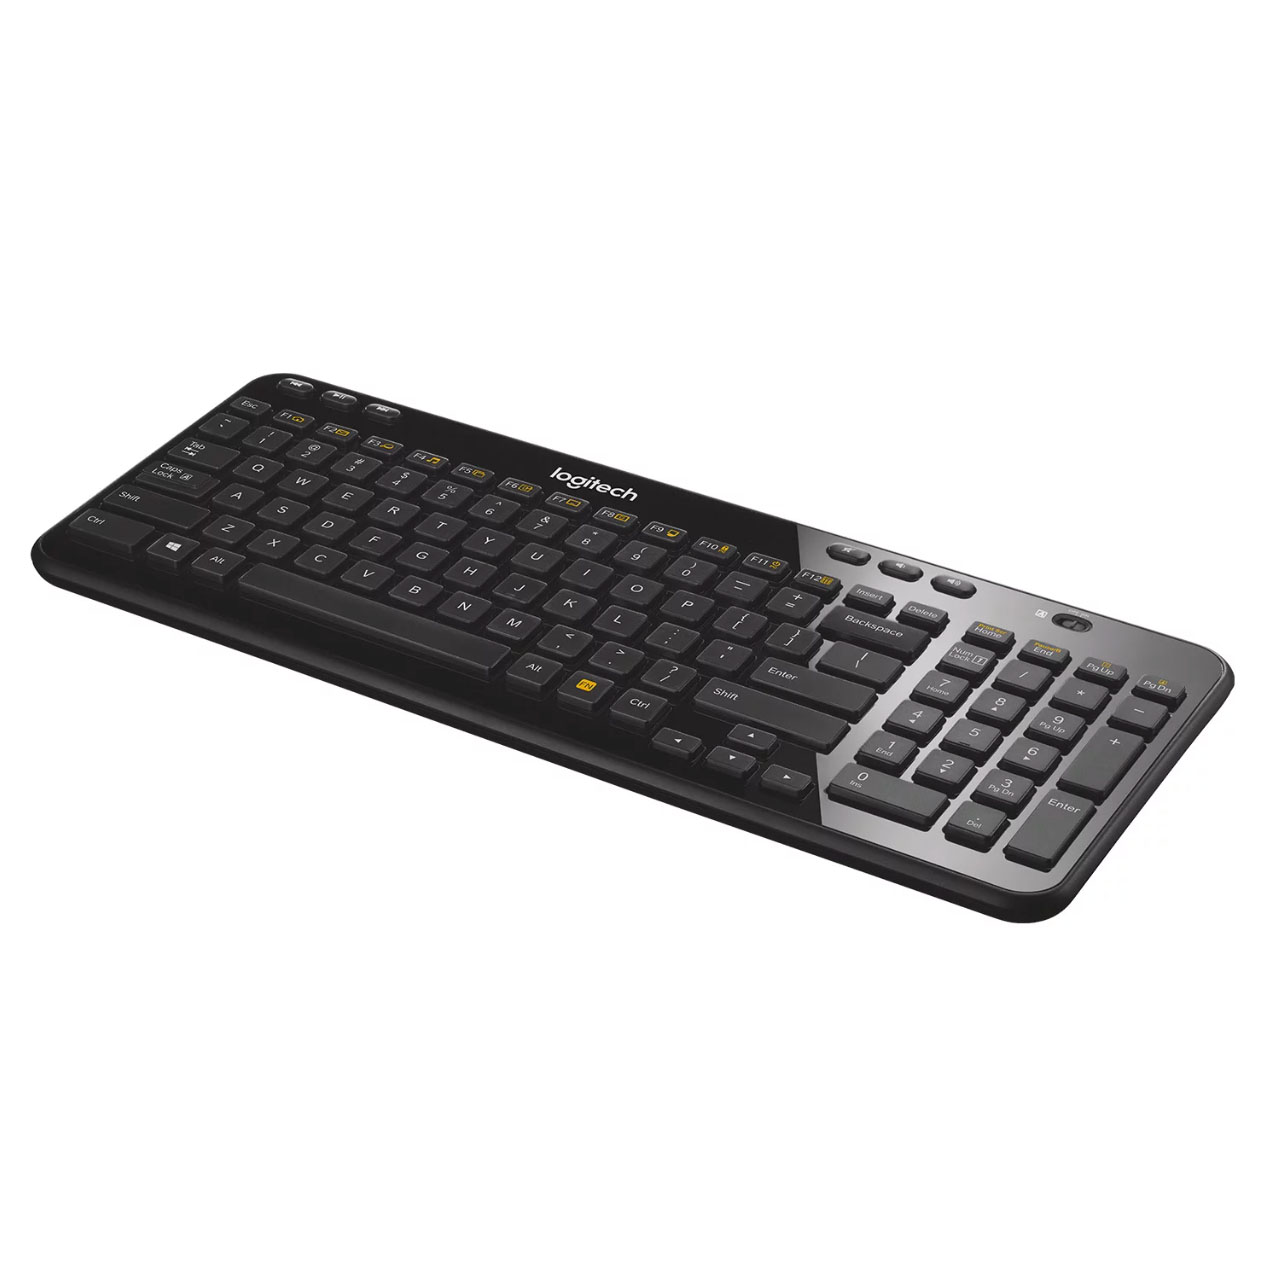 Logitech wireless keyboard in black